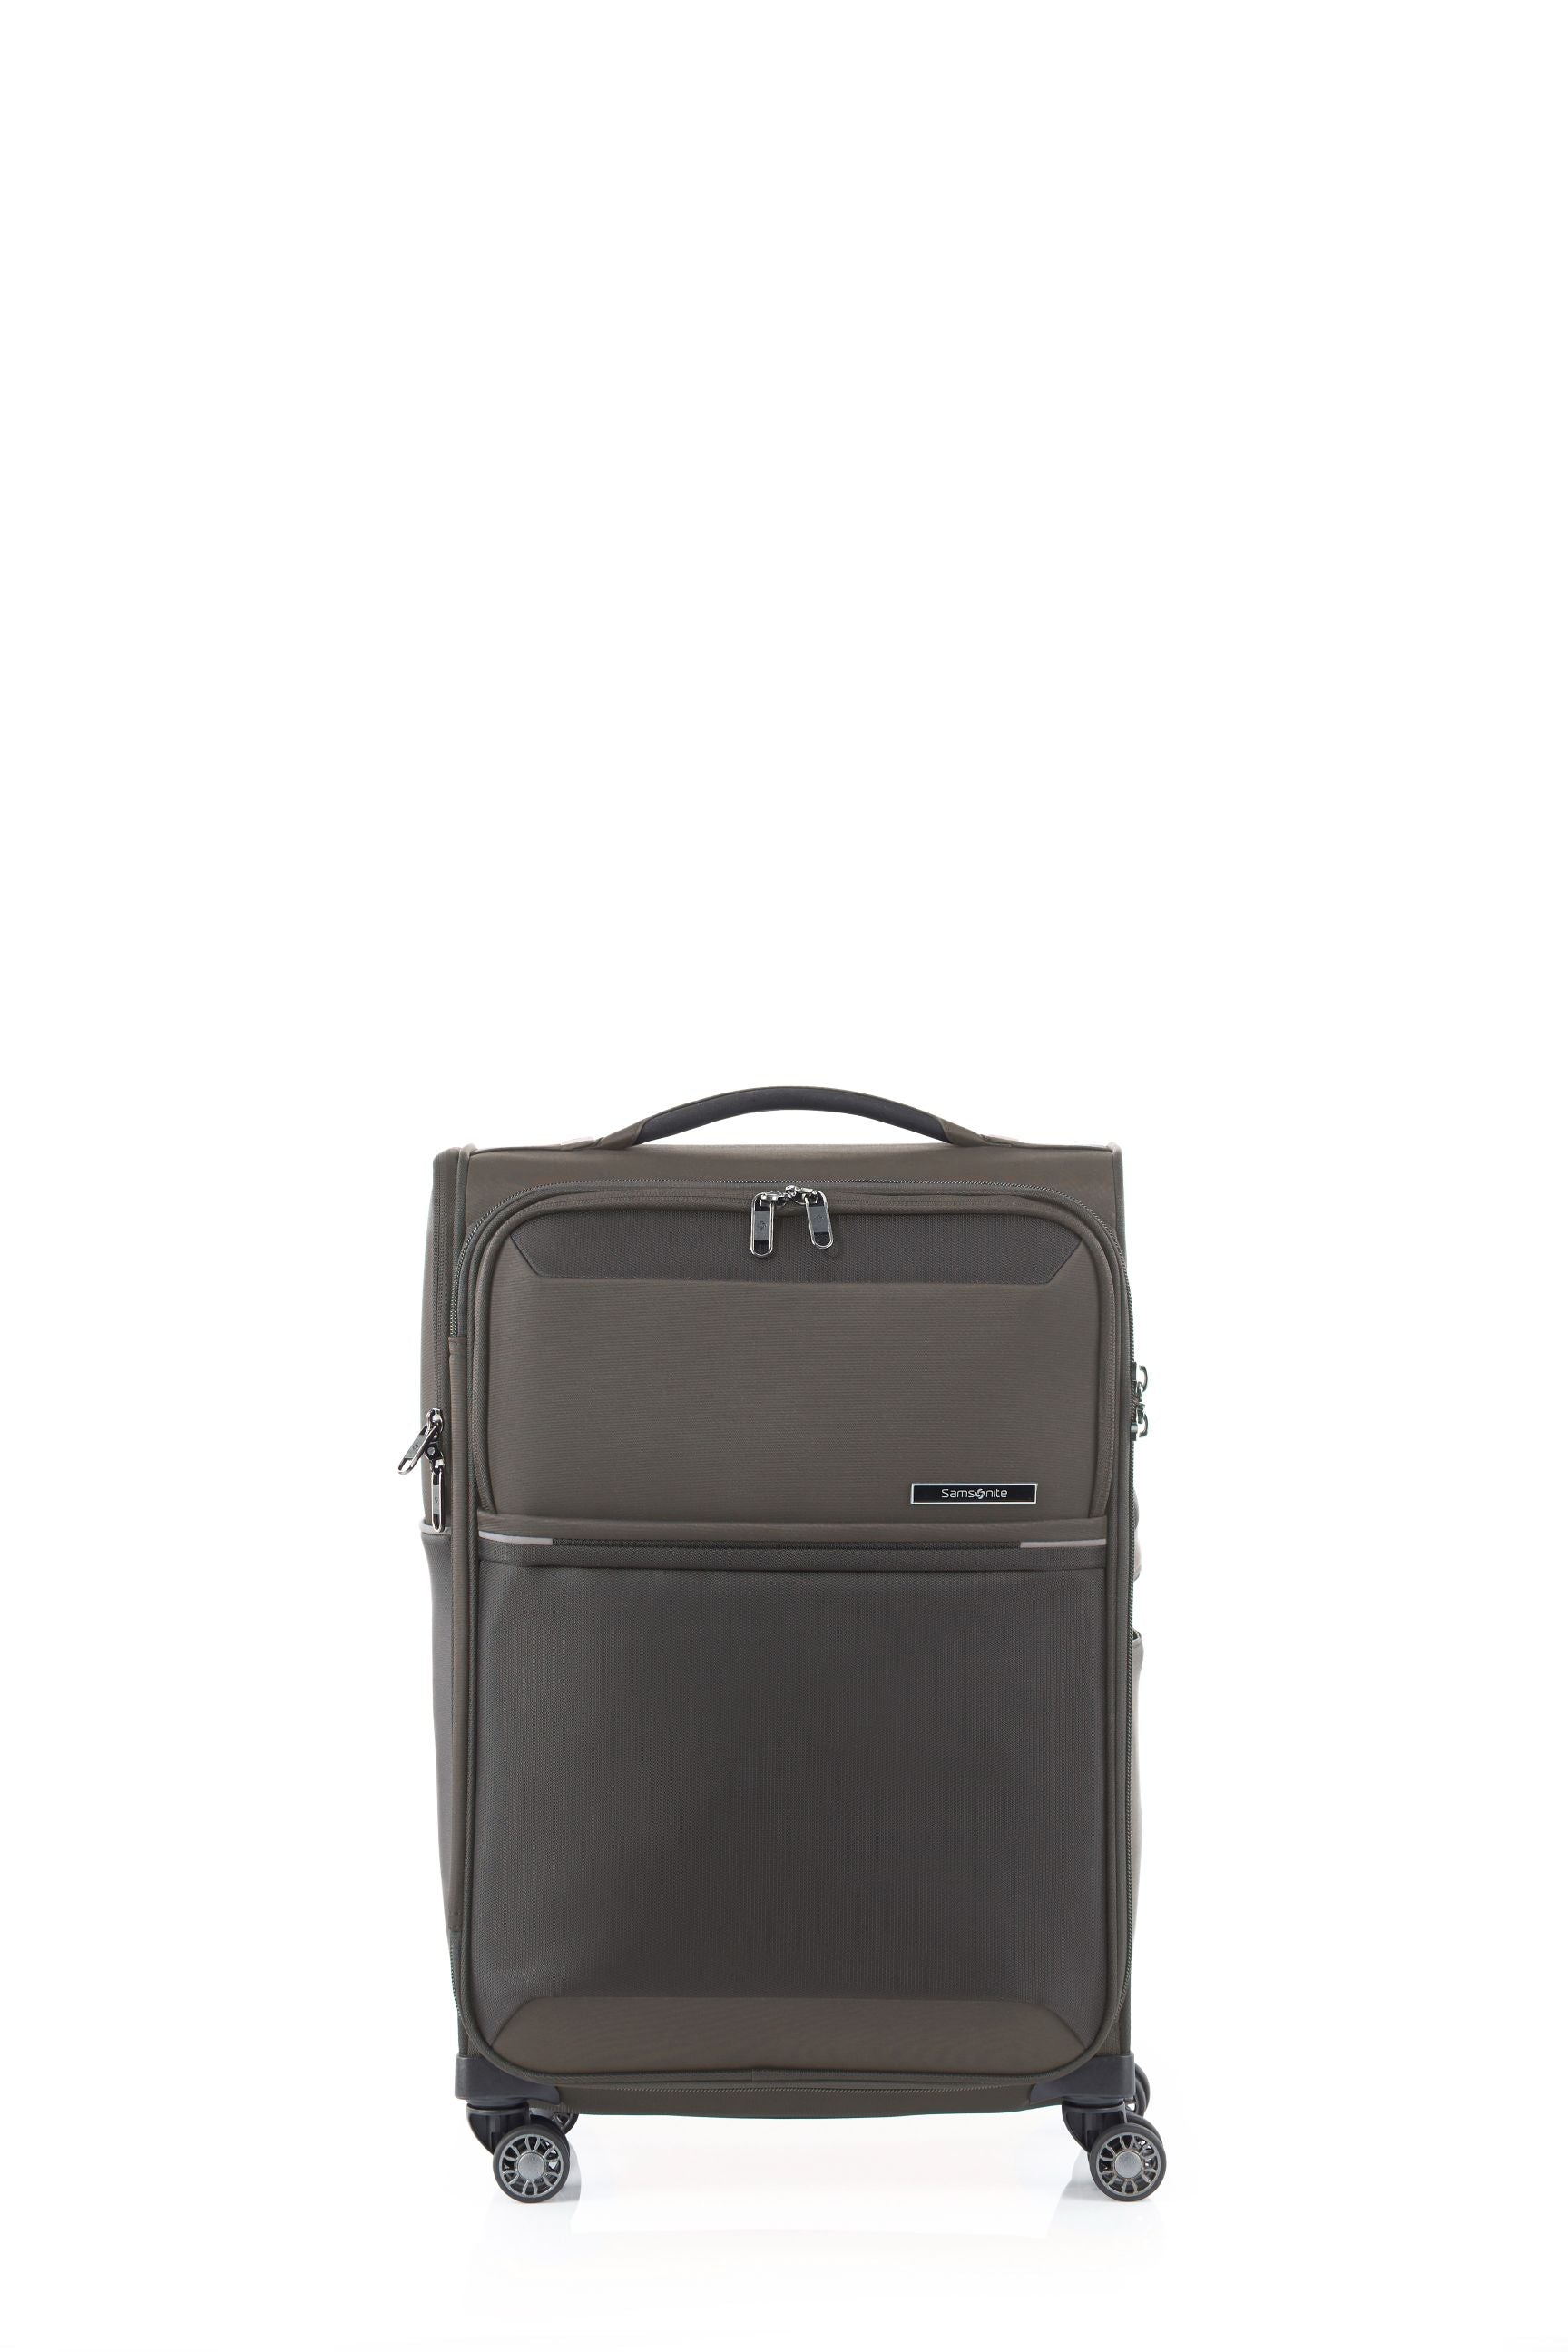 Samsonite - 73HR 55cm Small Suitcase - Platinum Grey - 0